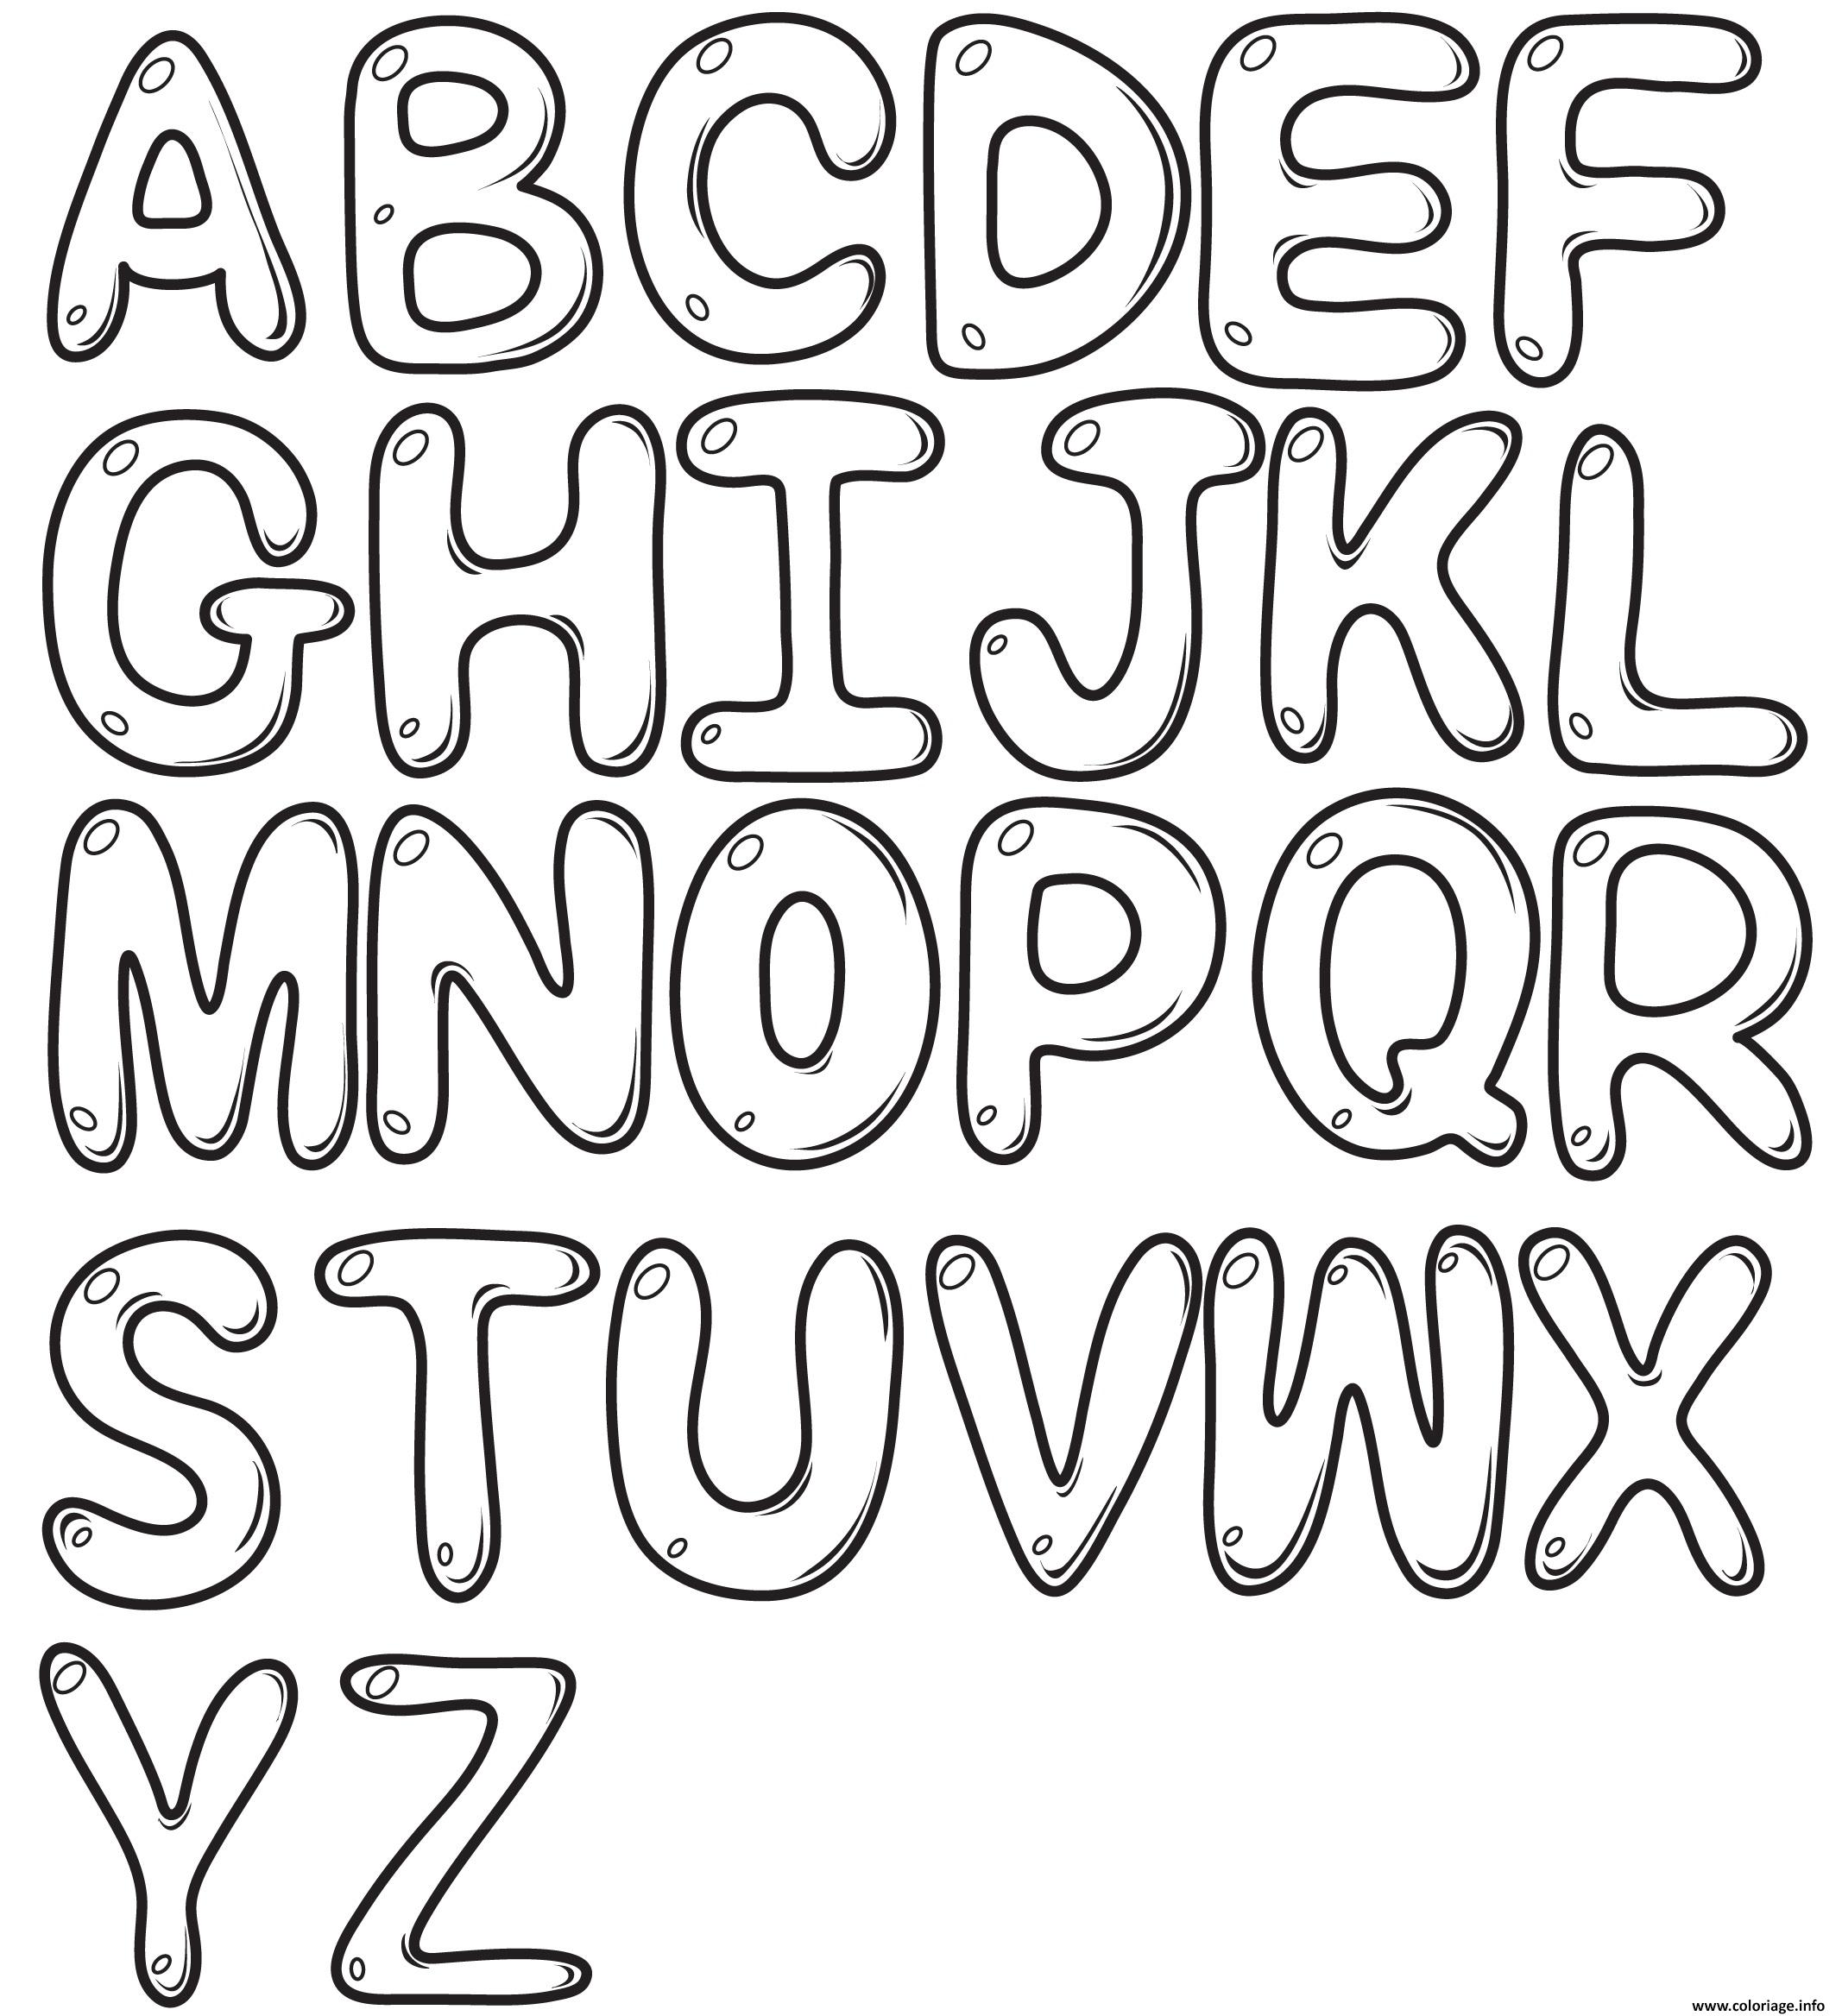 coloriage-bubble-letters-alphabet-az-dessin-alphabet-imprimer-sexiz-pix